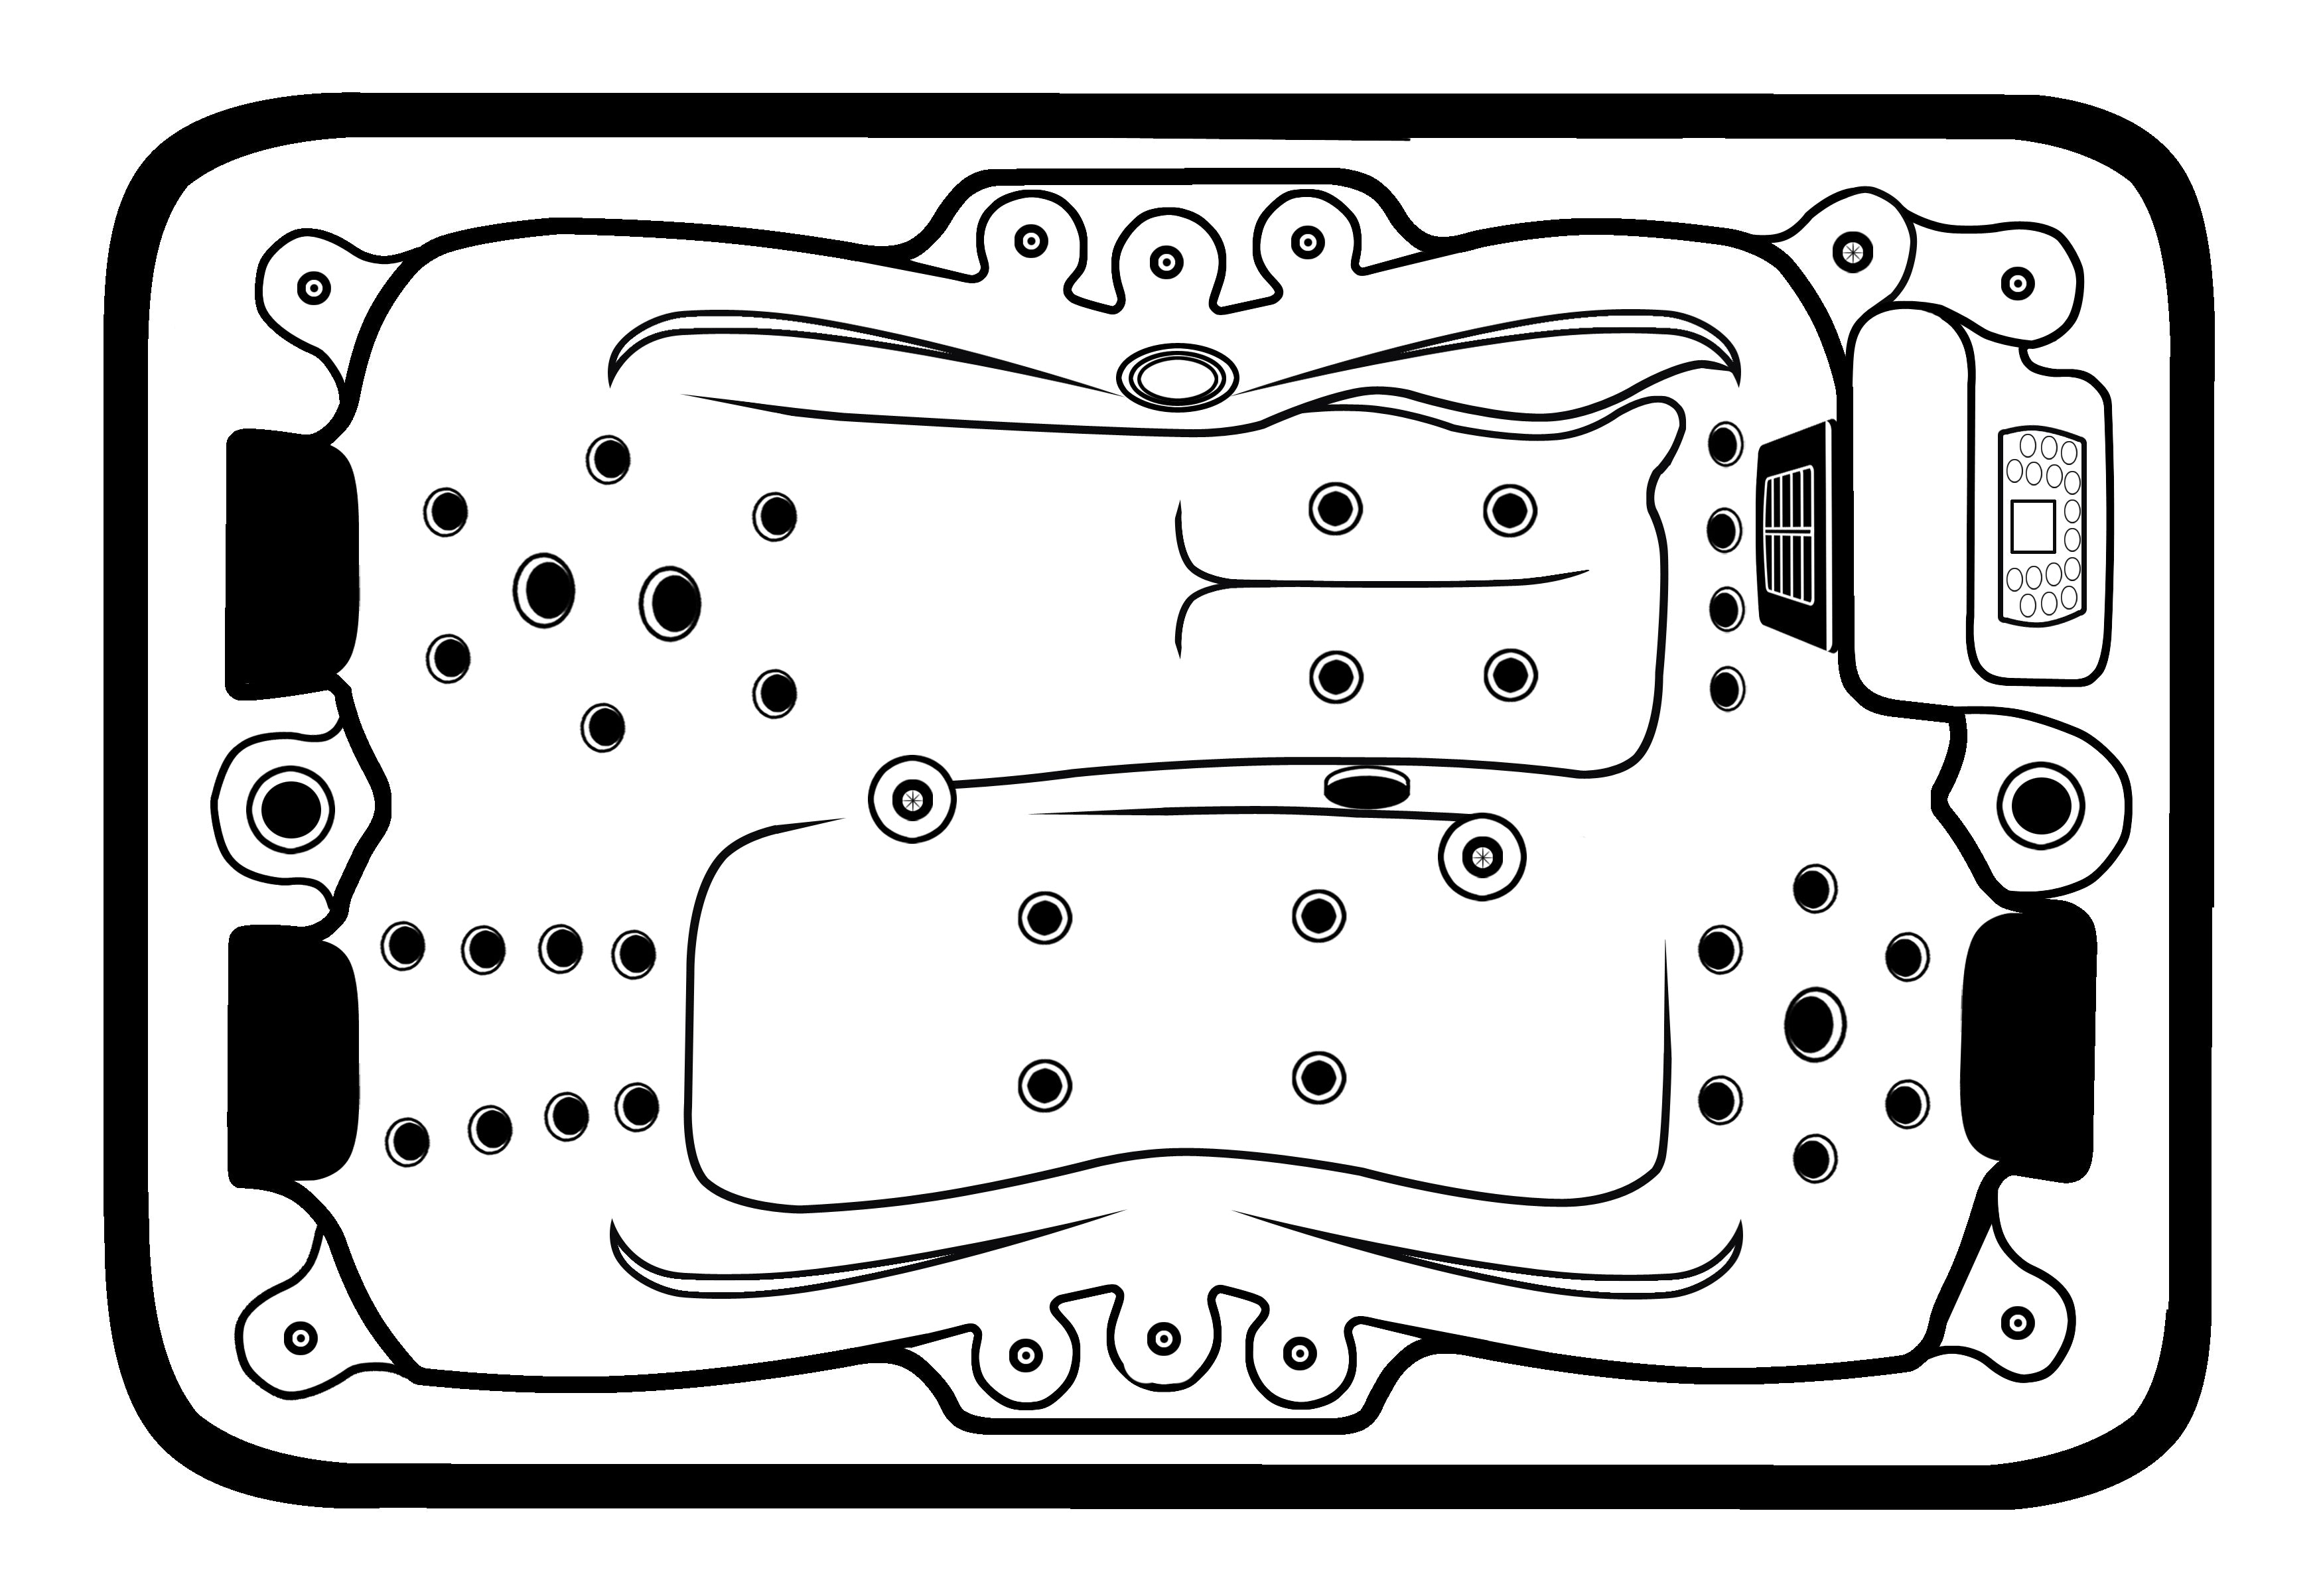 Sanotechnik Whirlpool MODENA - Ansicht von oben - Skizze mit Düsen, Sitzflächen, Bedienelement